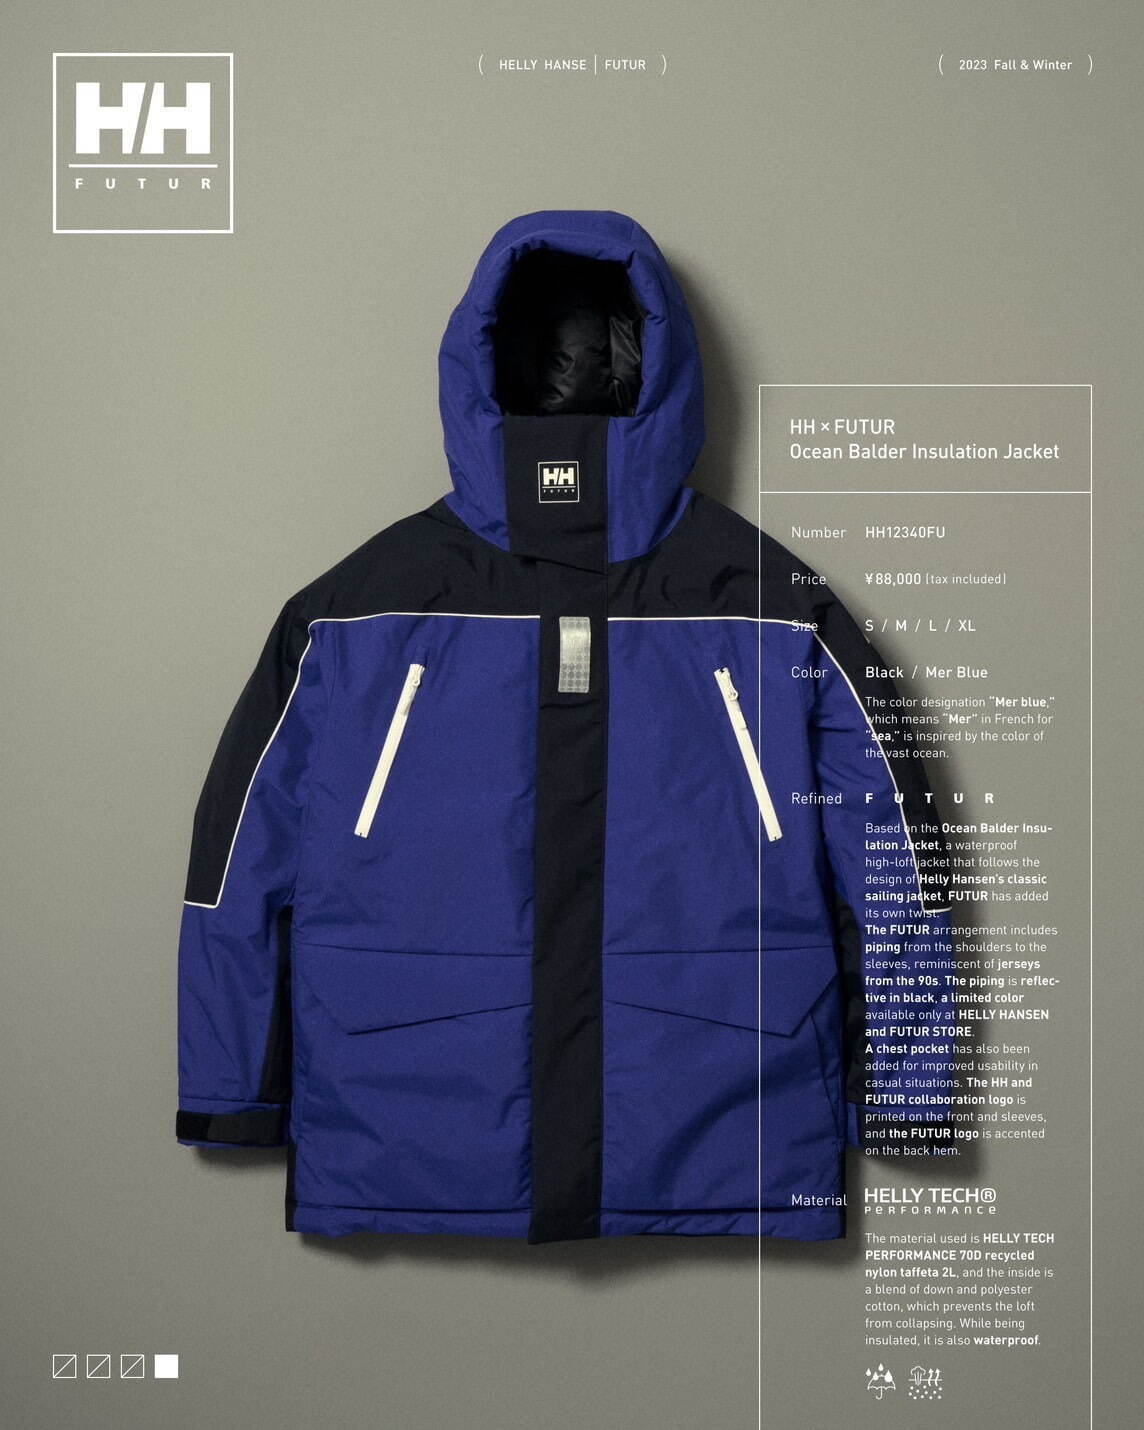 ヘリーハンセン×フューチャー オーシャンバルドールインサレーションジャケット (HH×FUTUR Ocean Balder Insulation Jacket) 88,000円 メールブルー